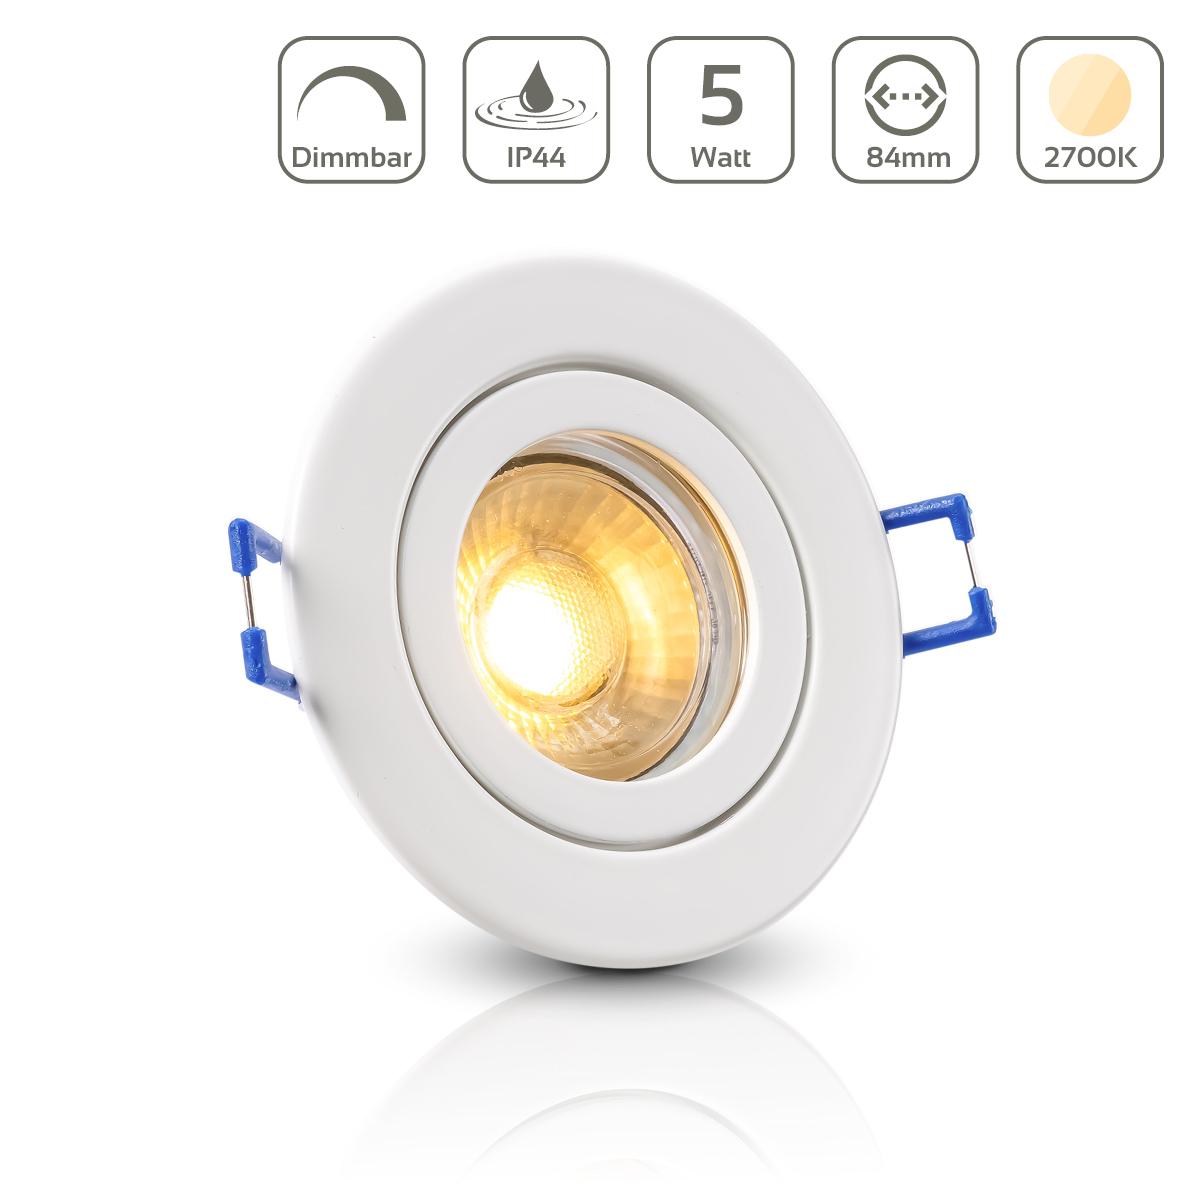 Einbauspot IP44 rund - Farbe: weiß - LED Leuchtmittel:  GU10 5W warmweiß dimmbar